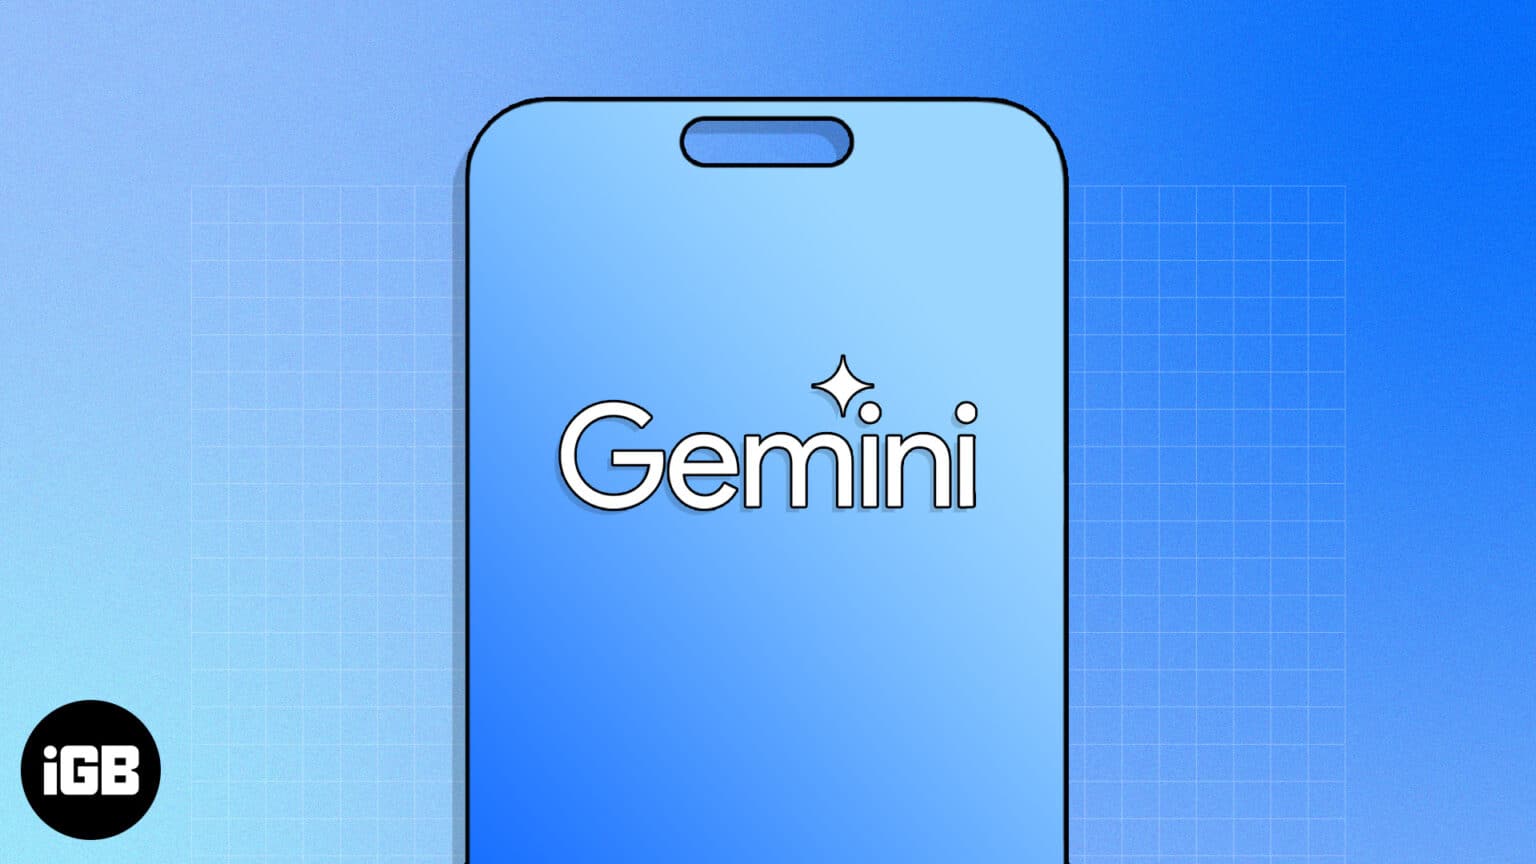 How to use Gemini AI on iPhone